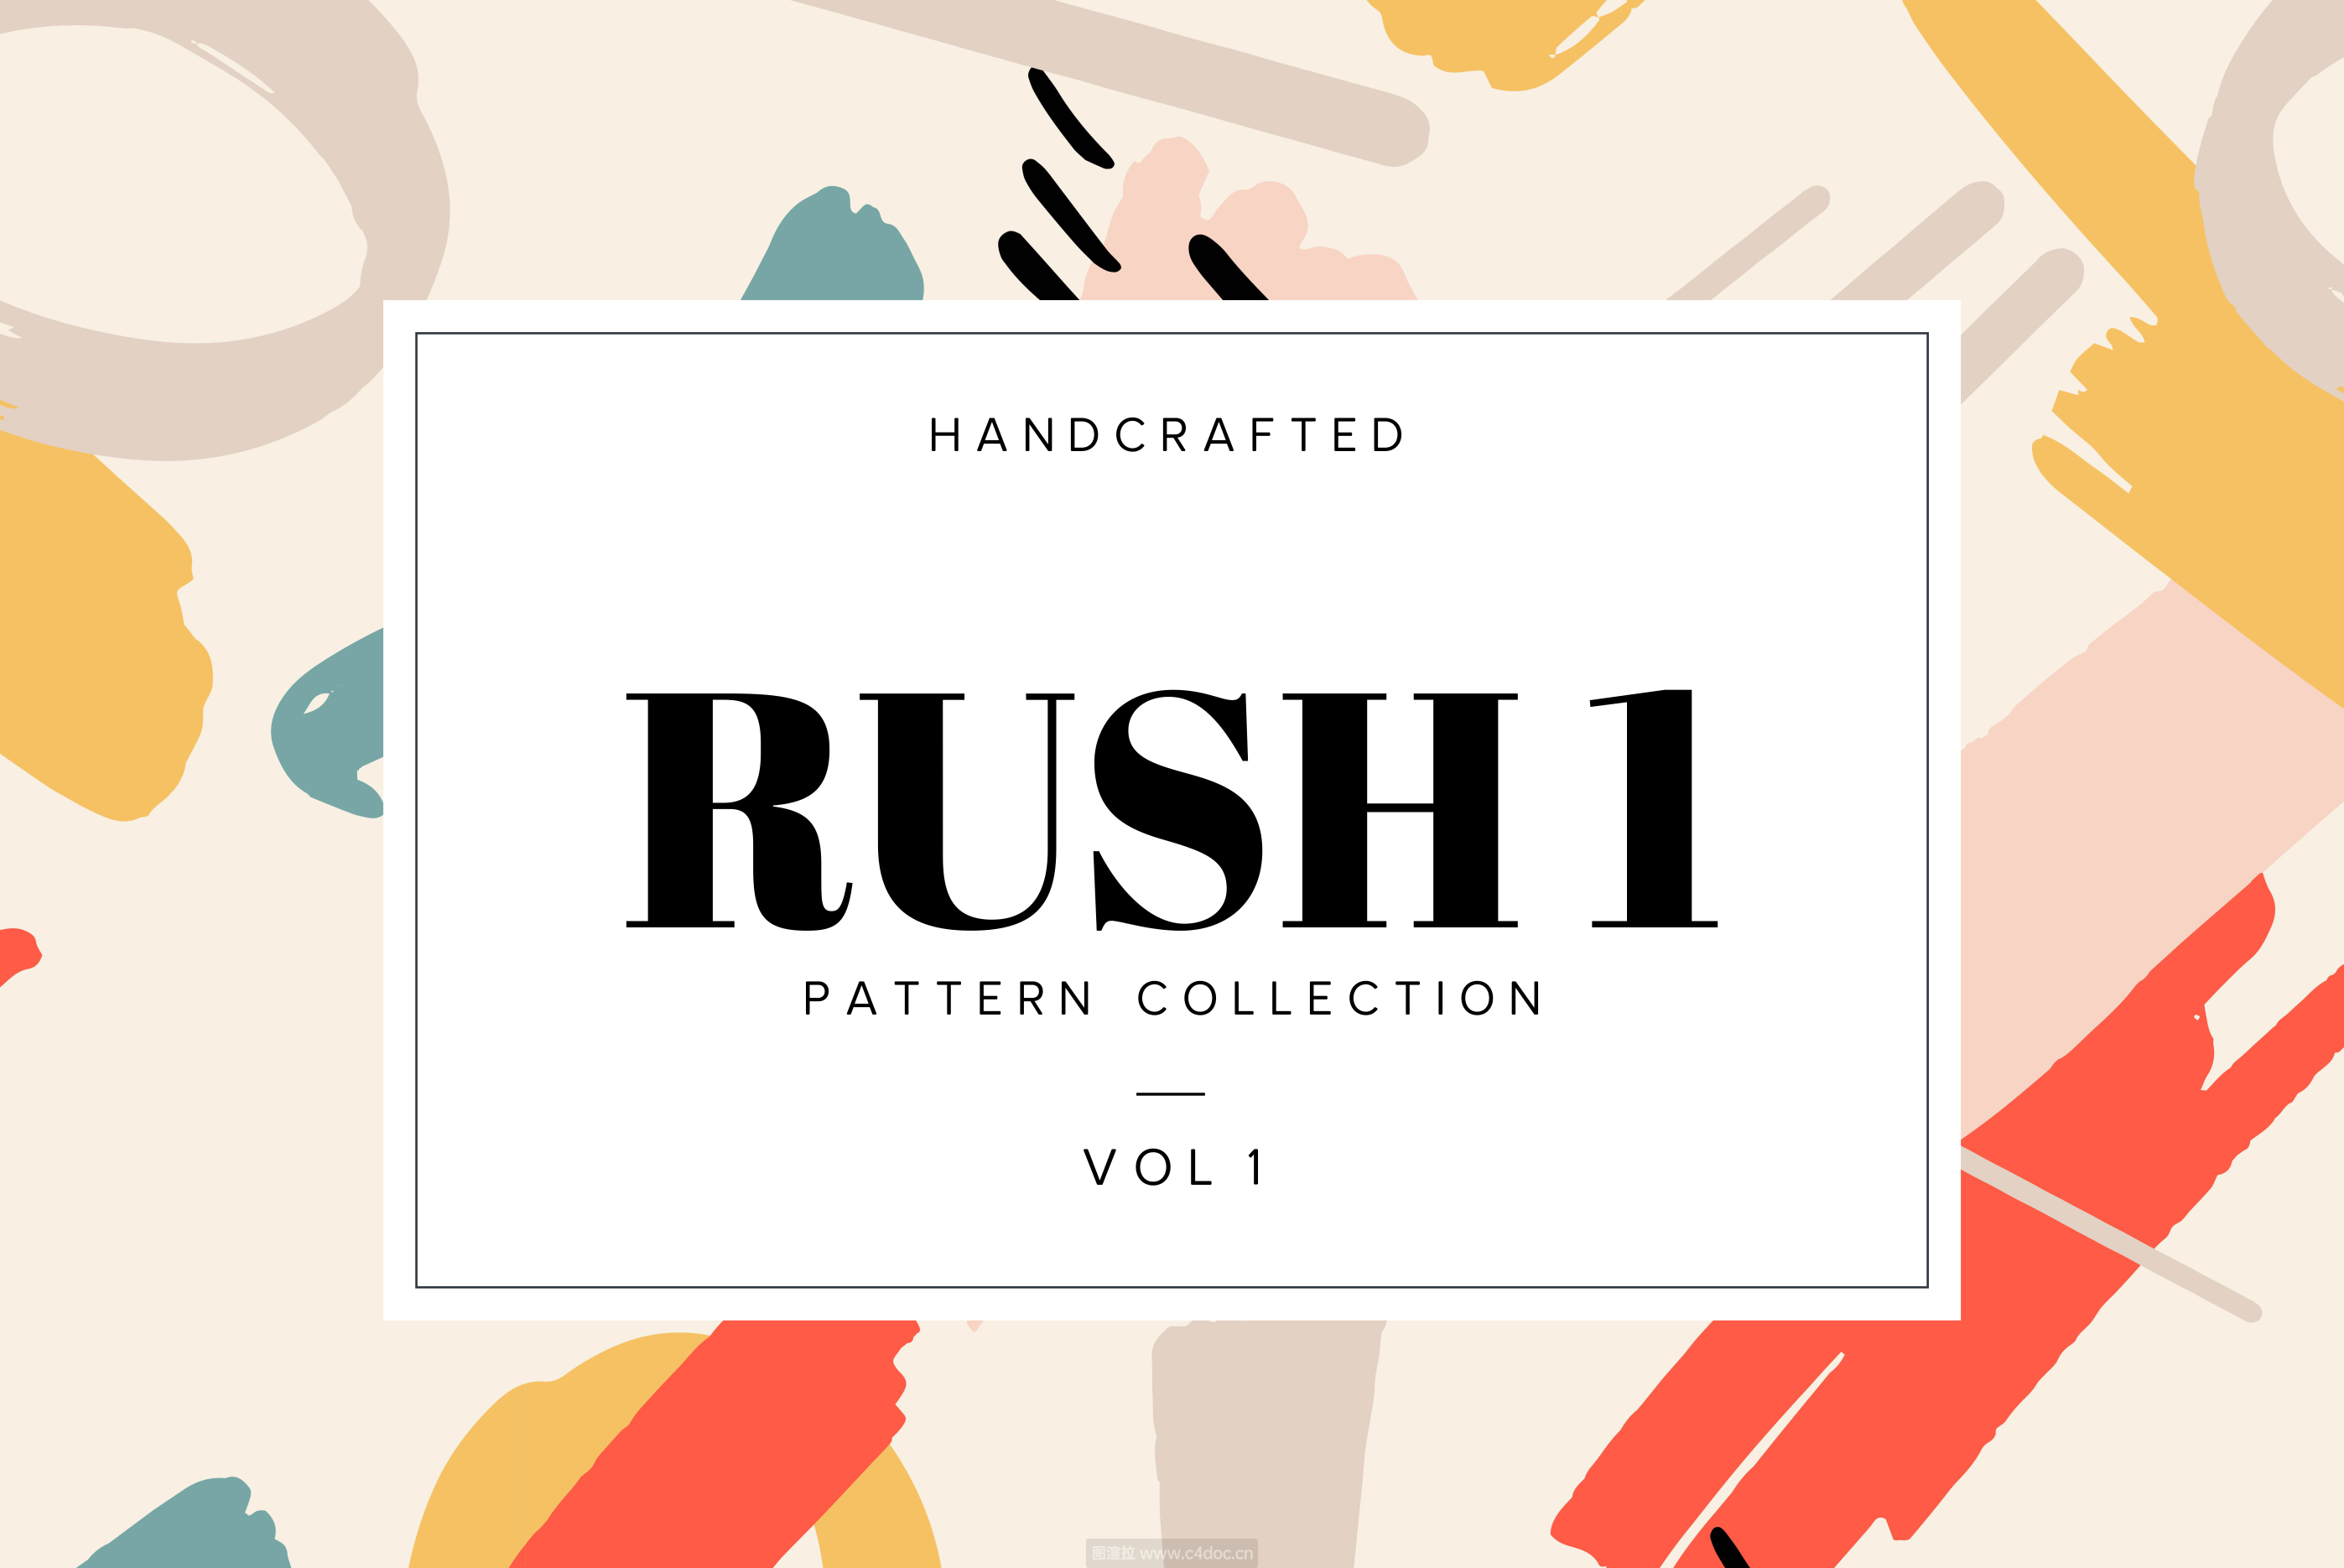 75款时尚多彩的手绘图形矢量图案集合Rush HandDrawn Patterns – Vol.1